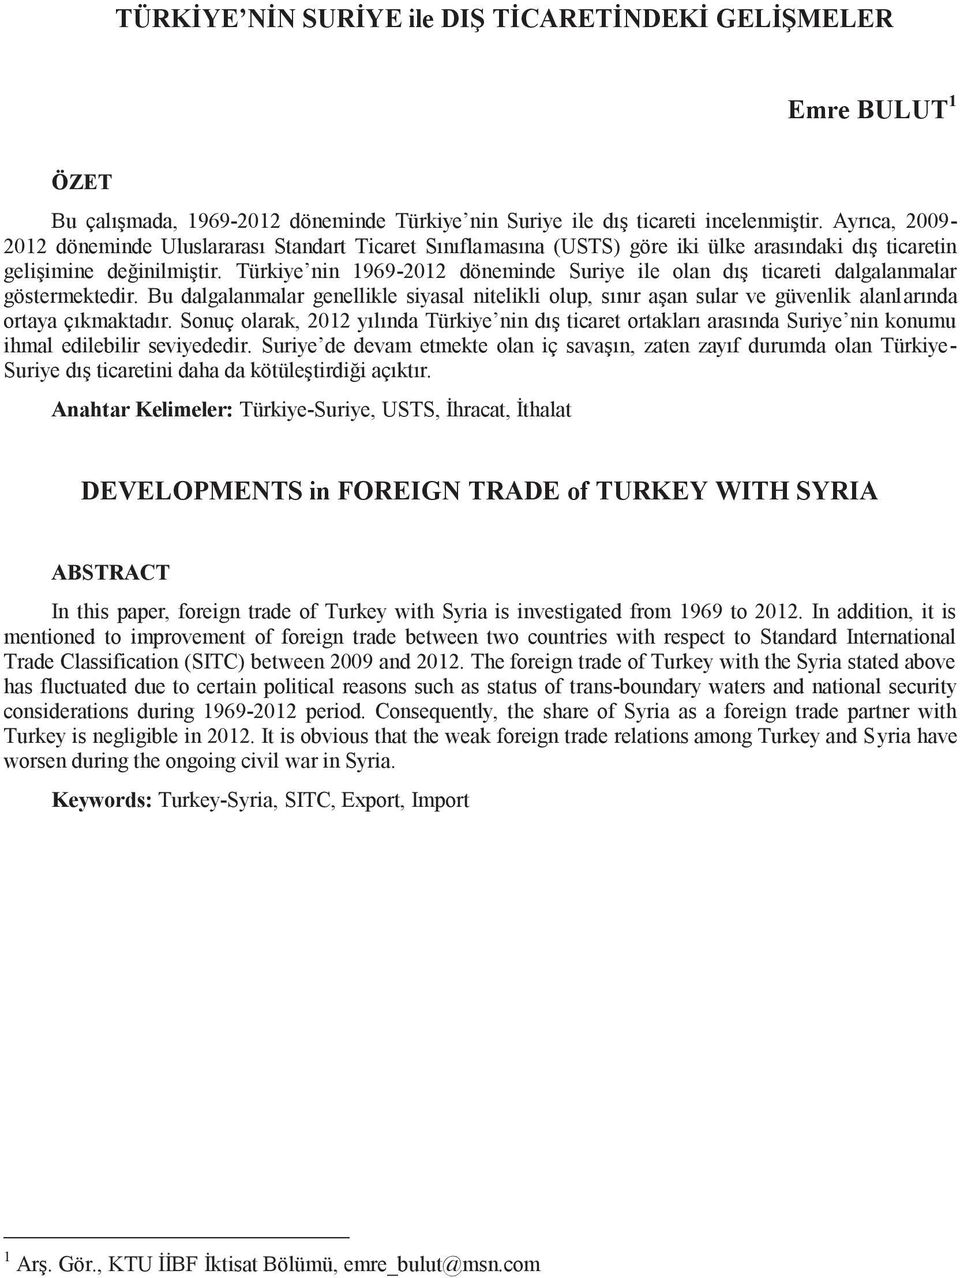 Türkiye nin 1969-2012 döneminde Suriye ile olan dış ticareti dalgalanmalar göstermektedir.